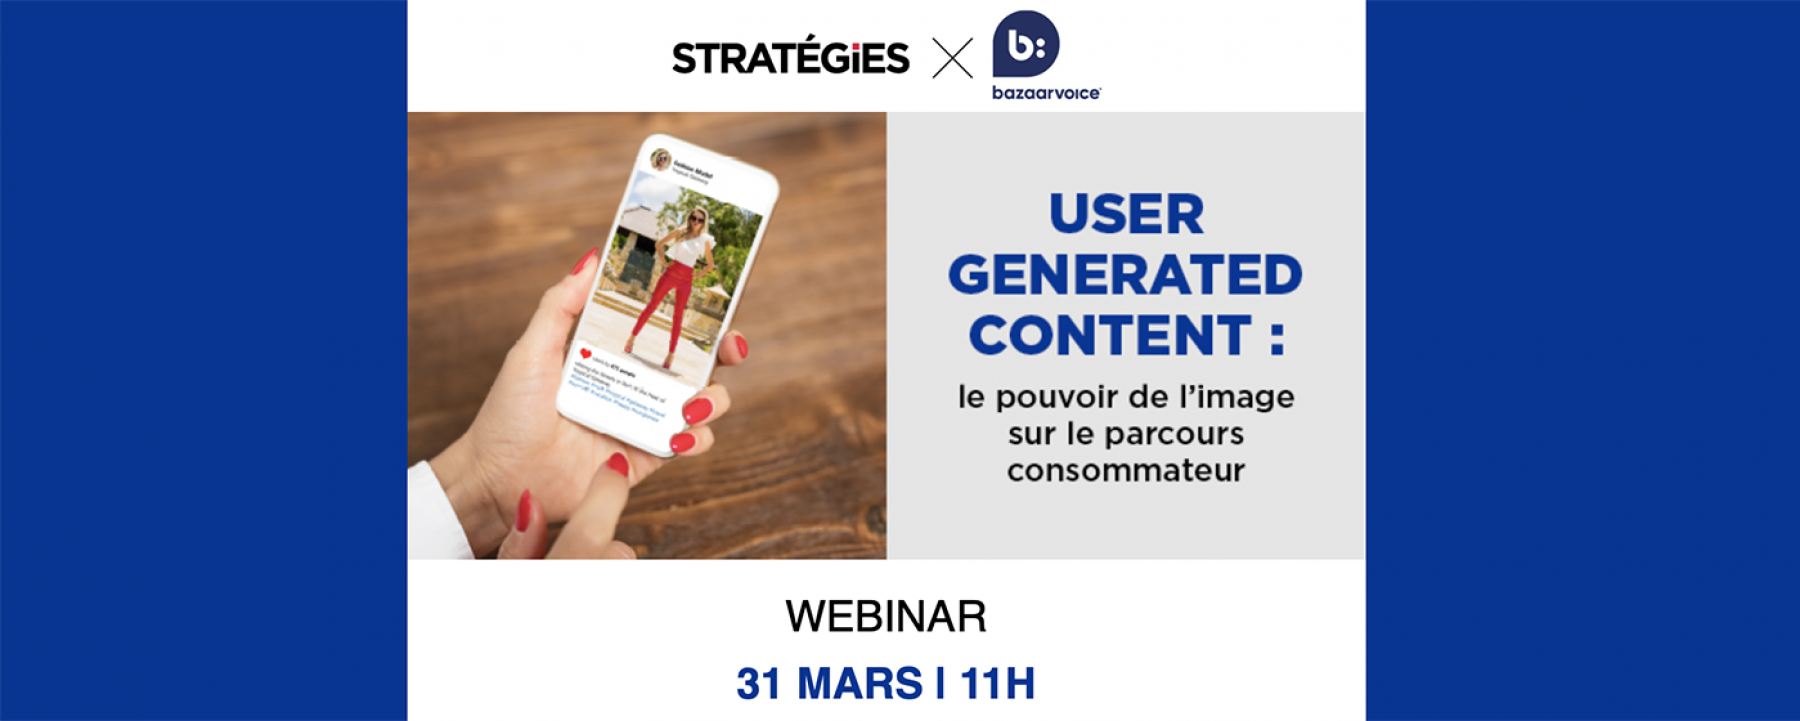 User generated content : le pouvoir de l’image sur le parcours consommateur, organisé par Stratégies et Bazaarvoice le 31 mars 2021